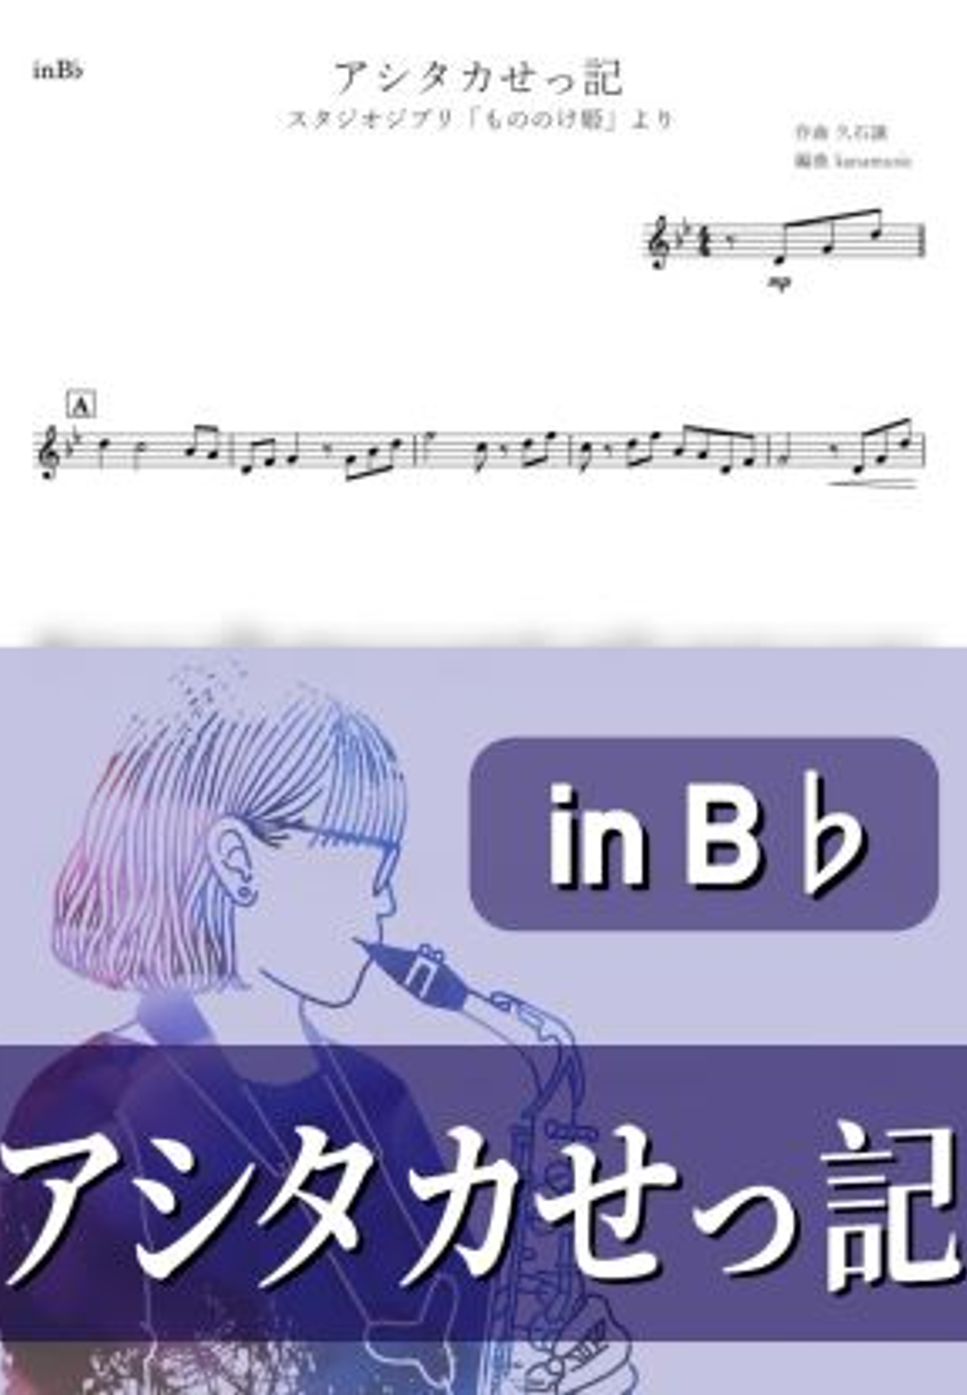 もののけ姫 - アシタカせっ記 (B♭) by kanamusic